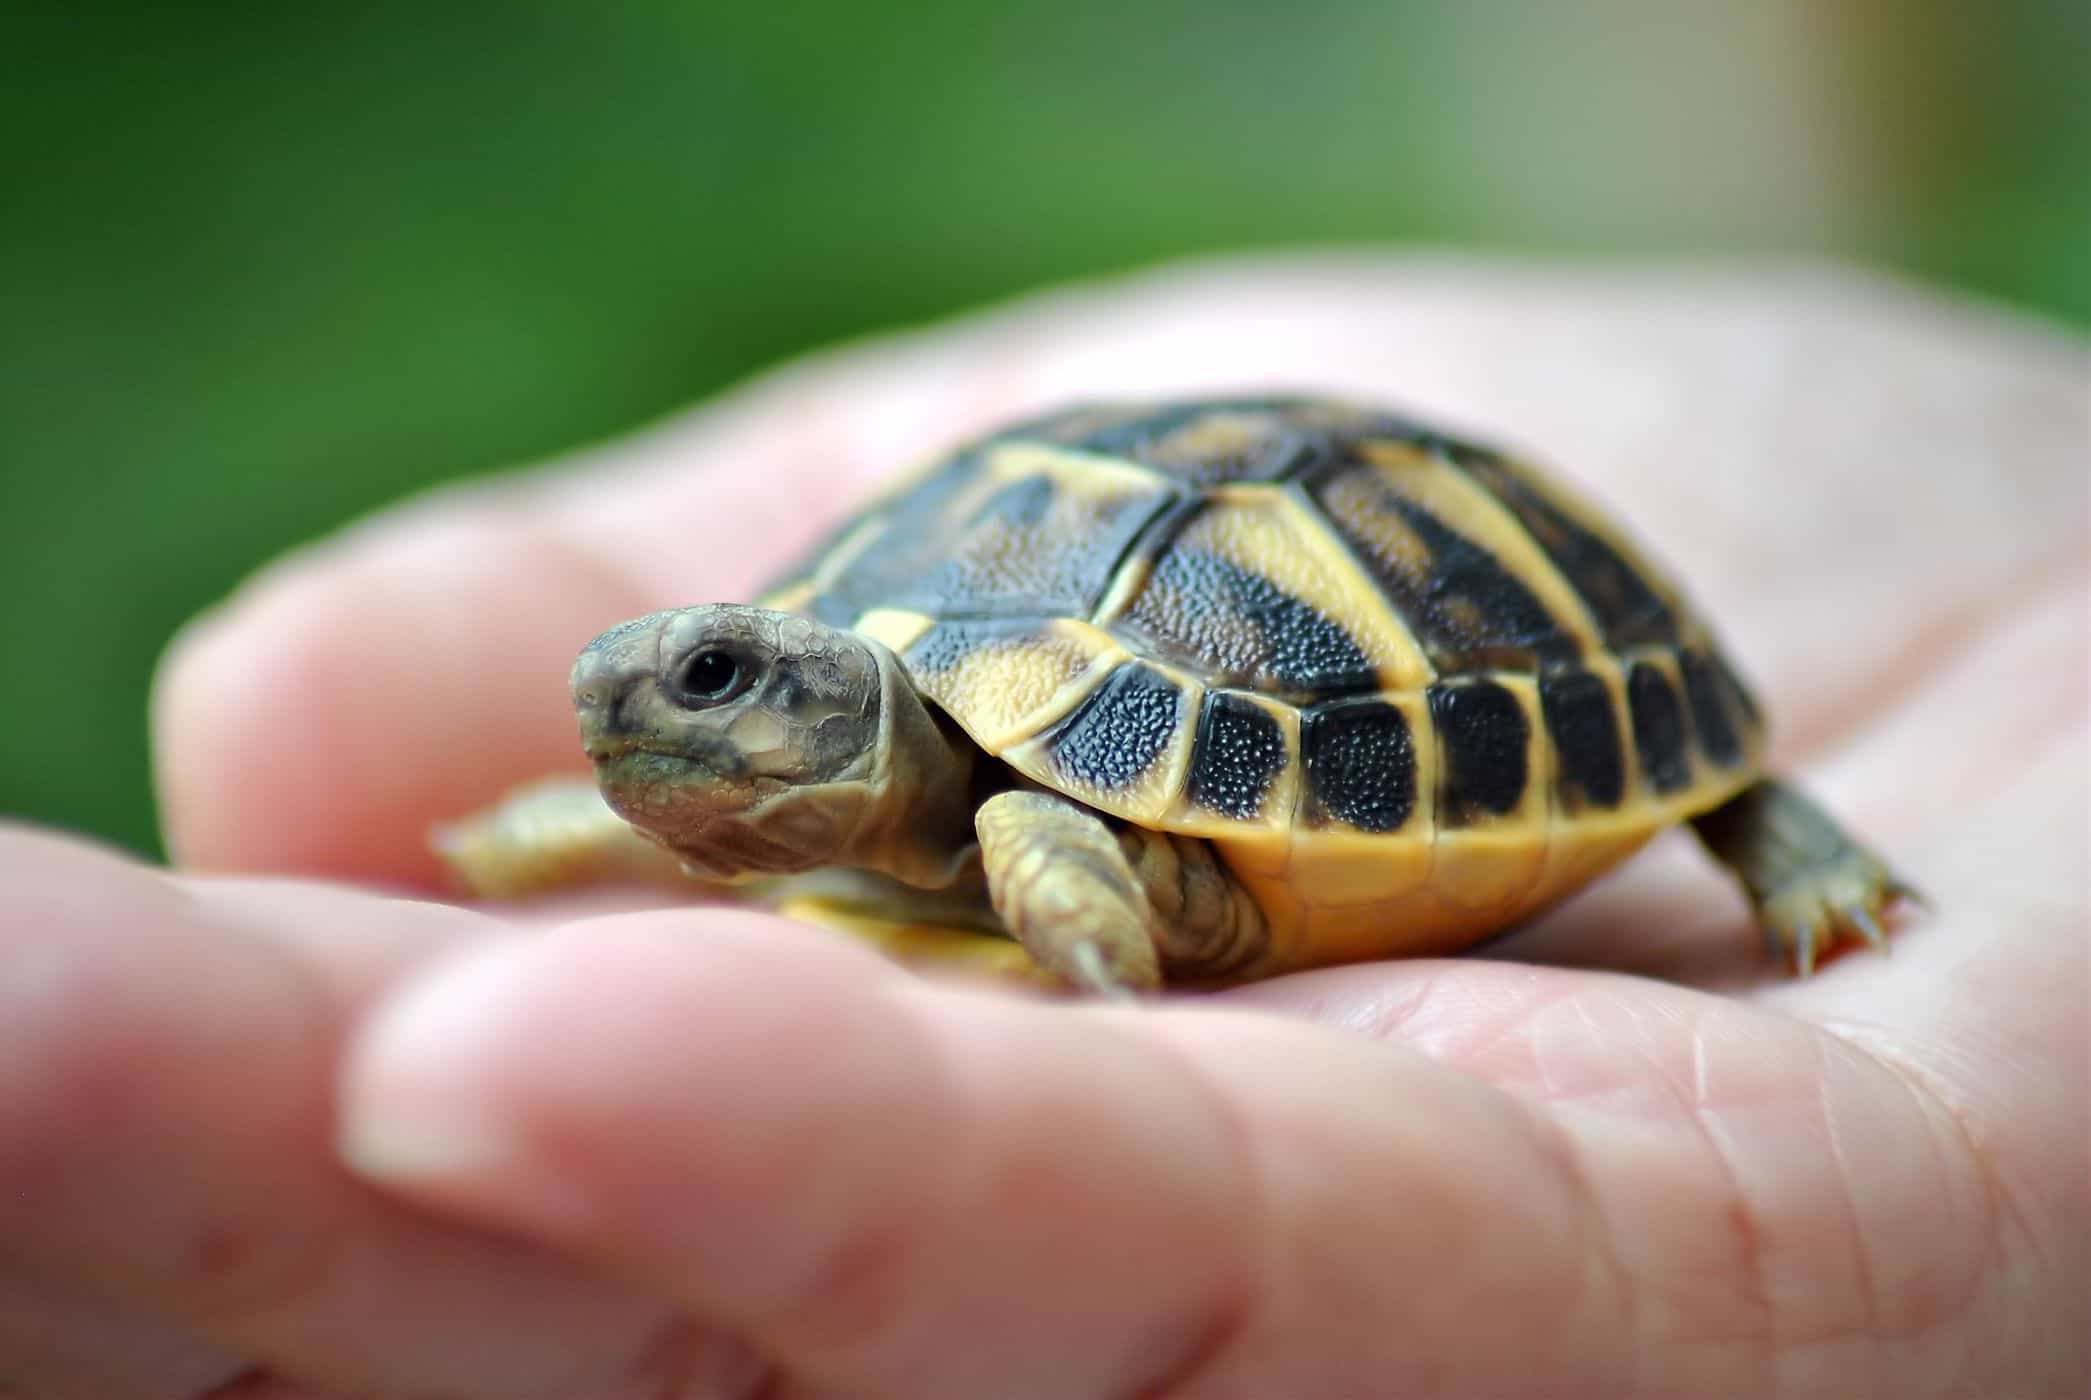 a teknősök fenntartása növeli a szalmonella fertőzés kockázatát